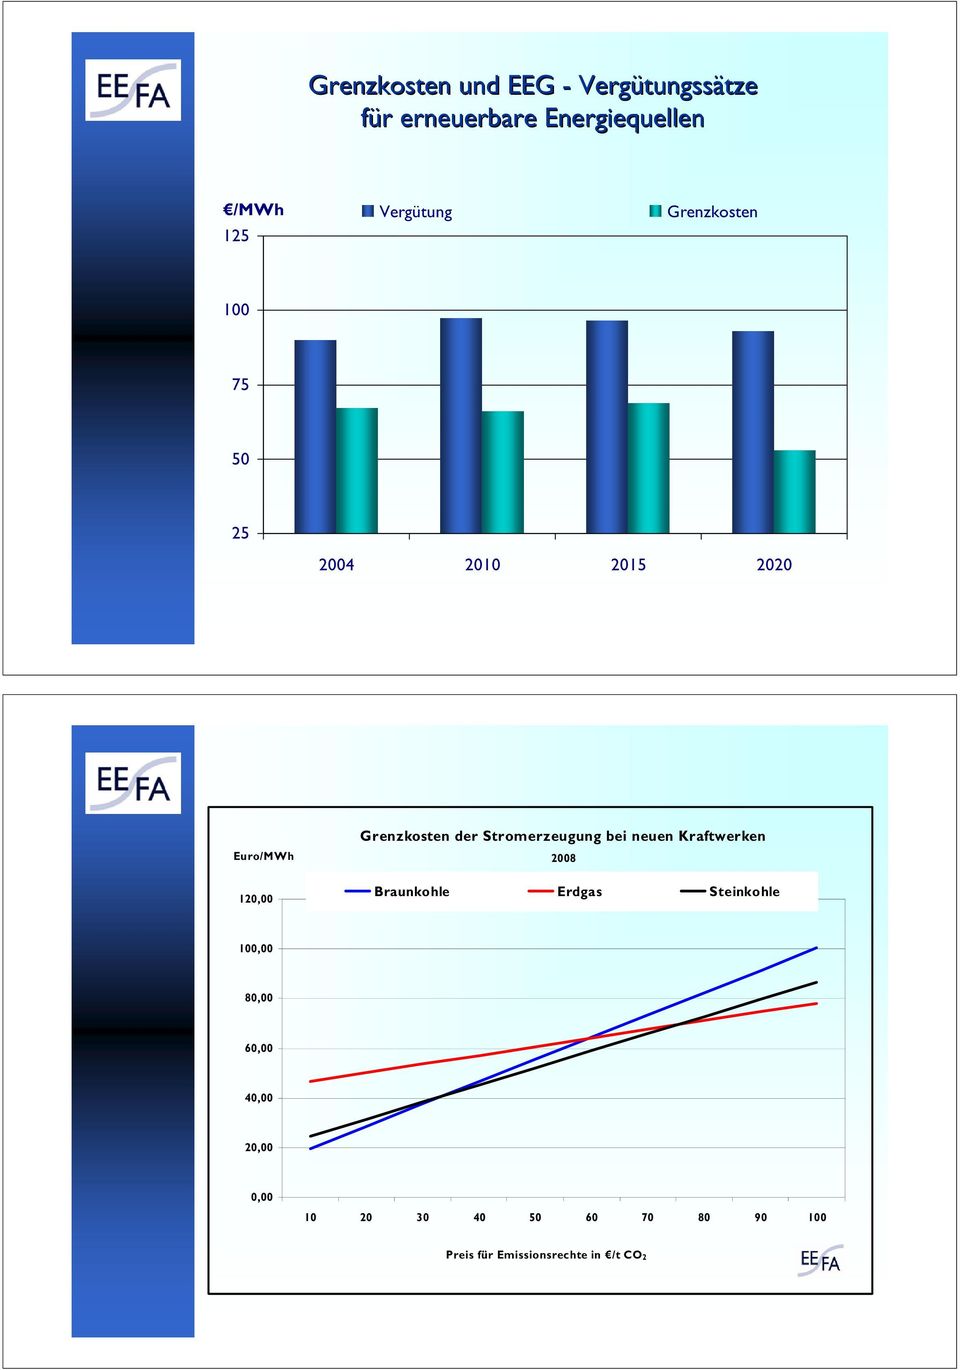 Euro/MWh 12, Grenzkosten der Stromerzeugung bei neuen Kraftwerken 28